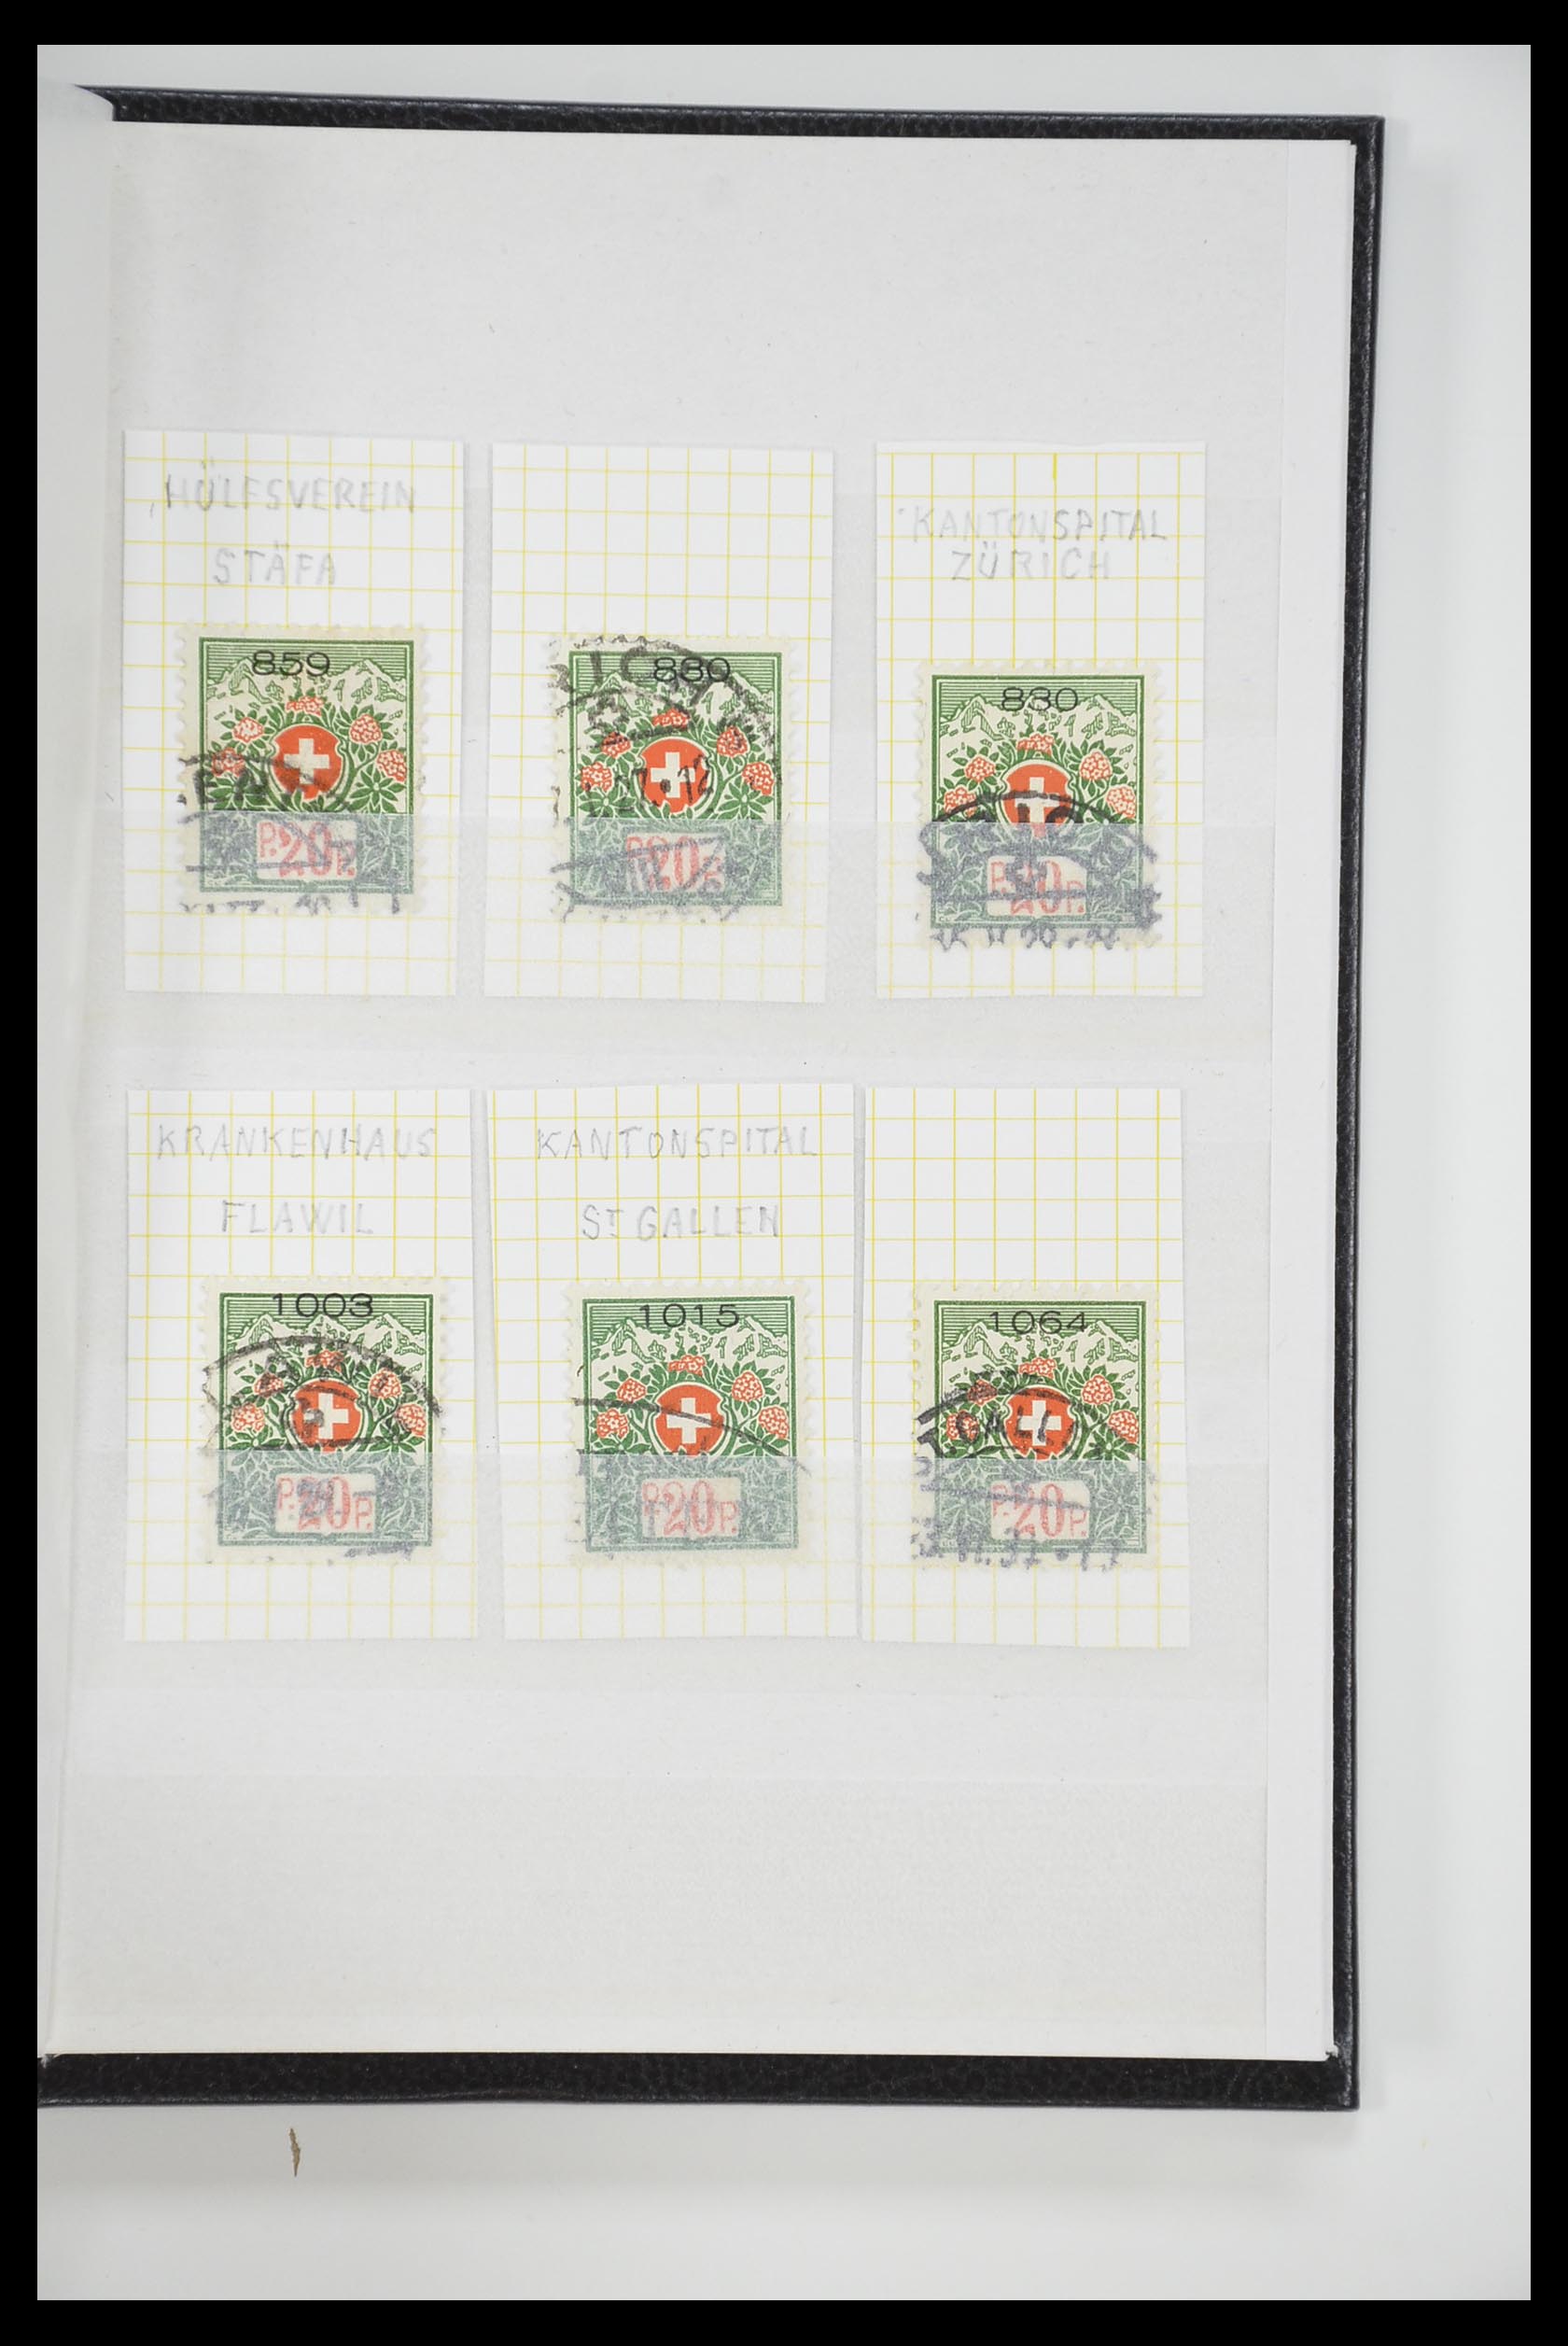 33284 062 - Postzegelverzameling 33284 Zwitserland betere uitgaven 1900-1995.